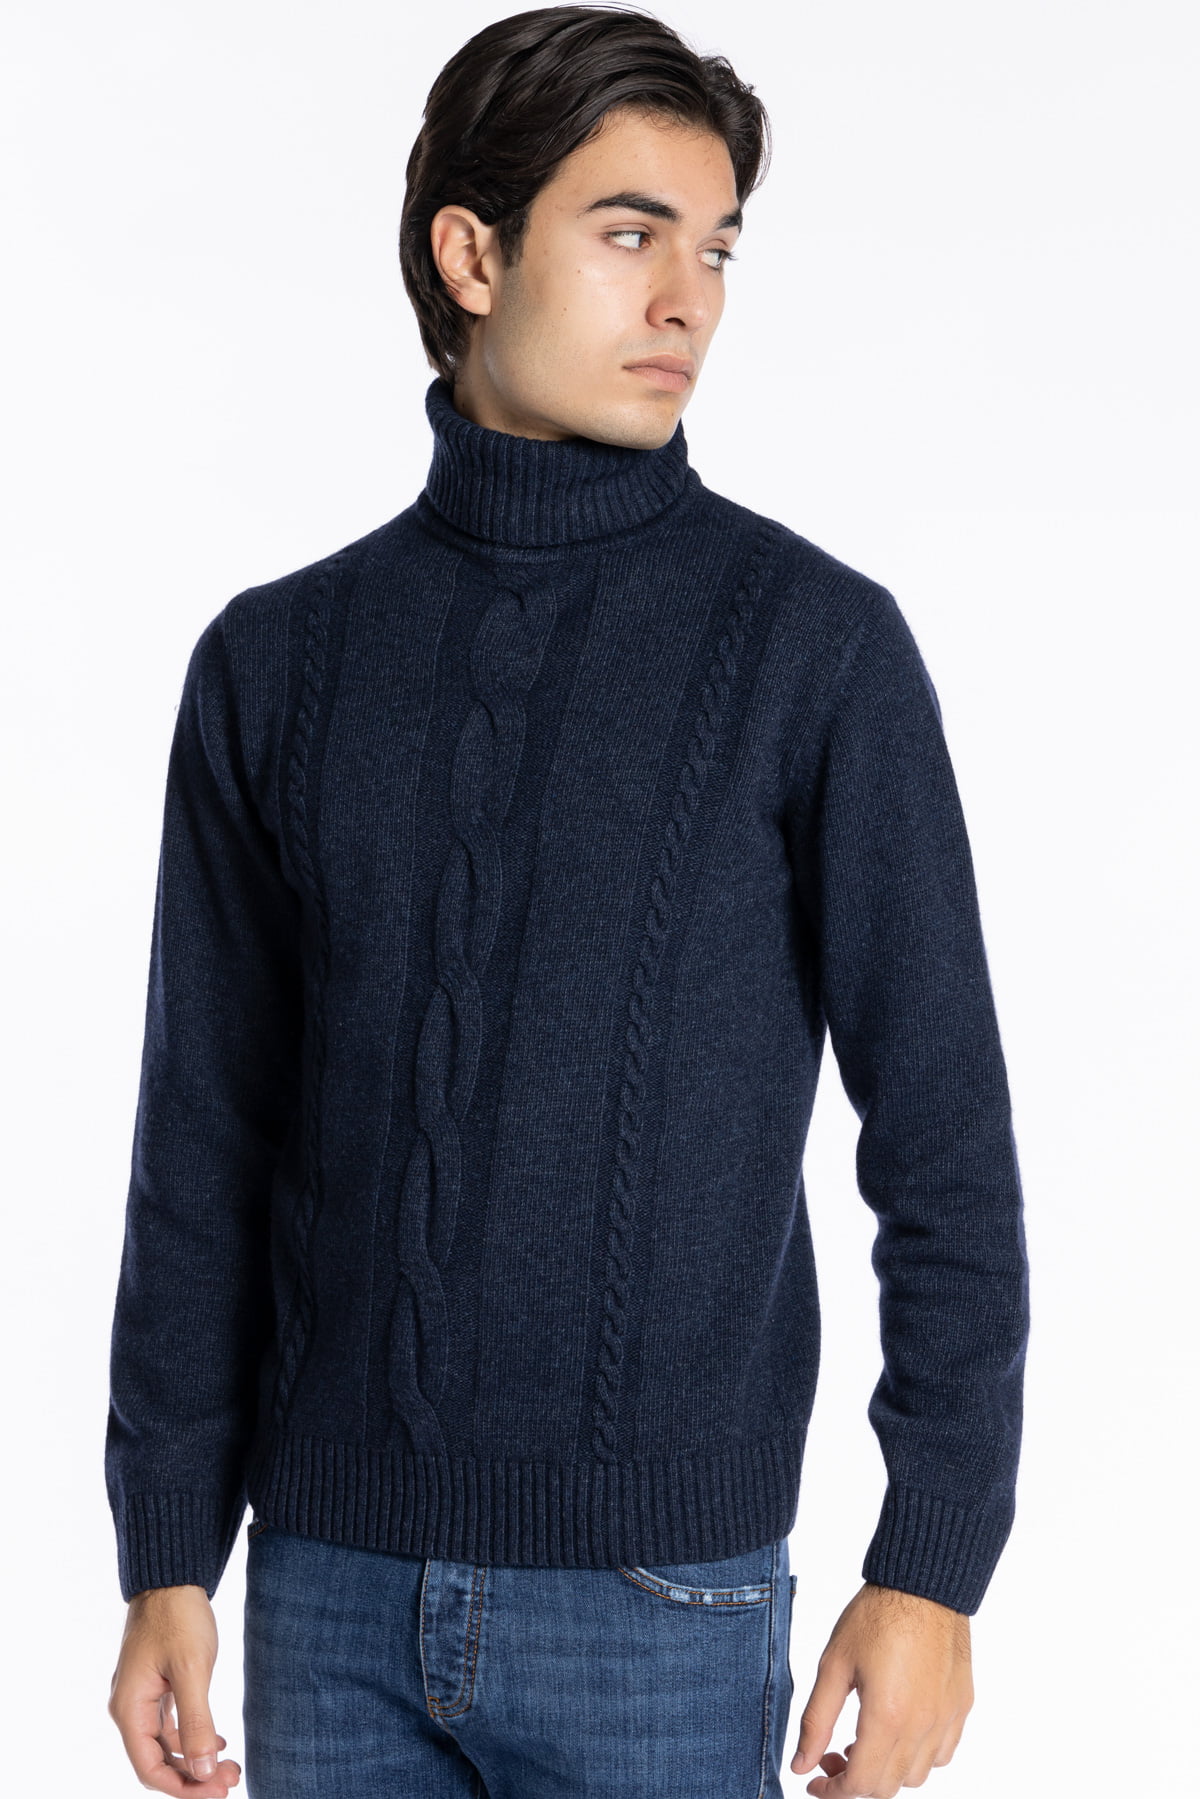 Maglione da uomo collo alto Blu in lana e Cashmere con trama treccia interna maniche lunghe